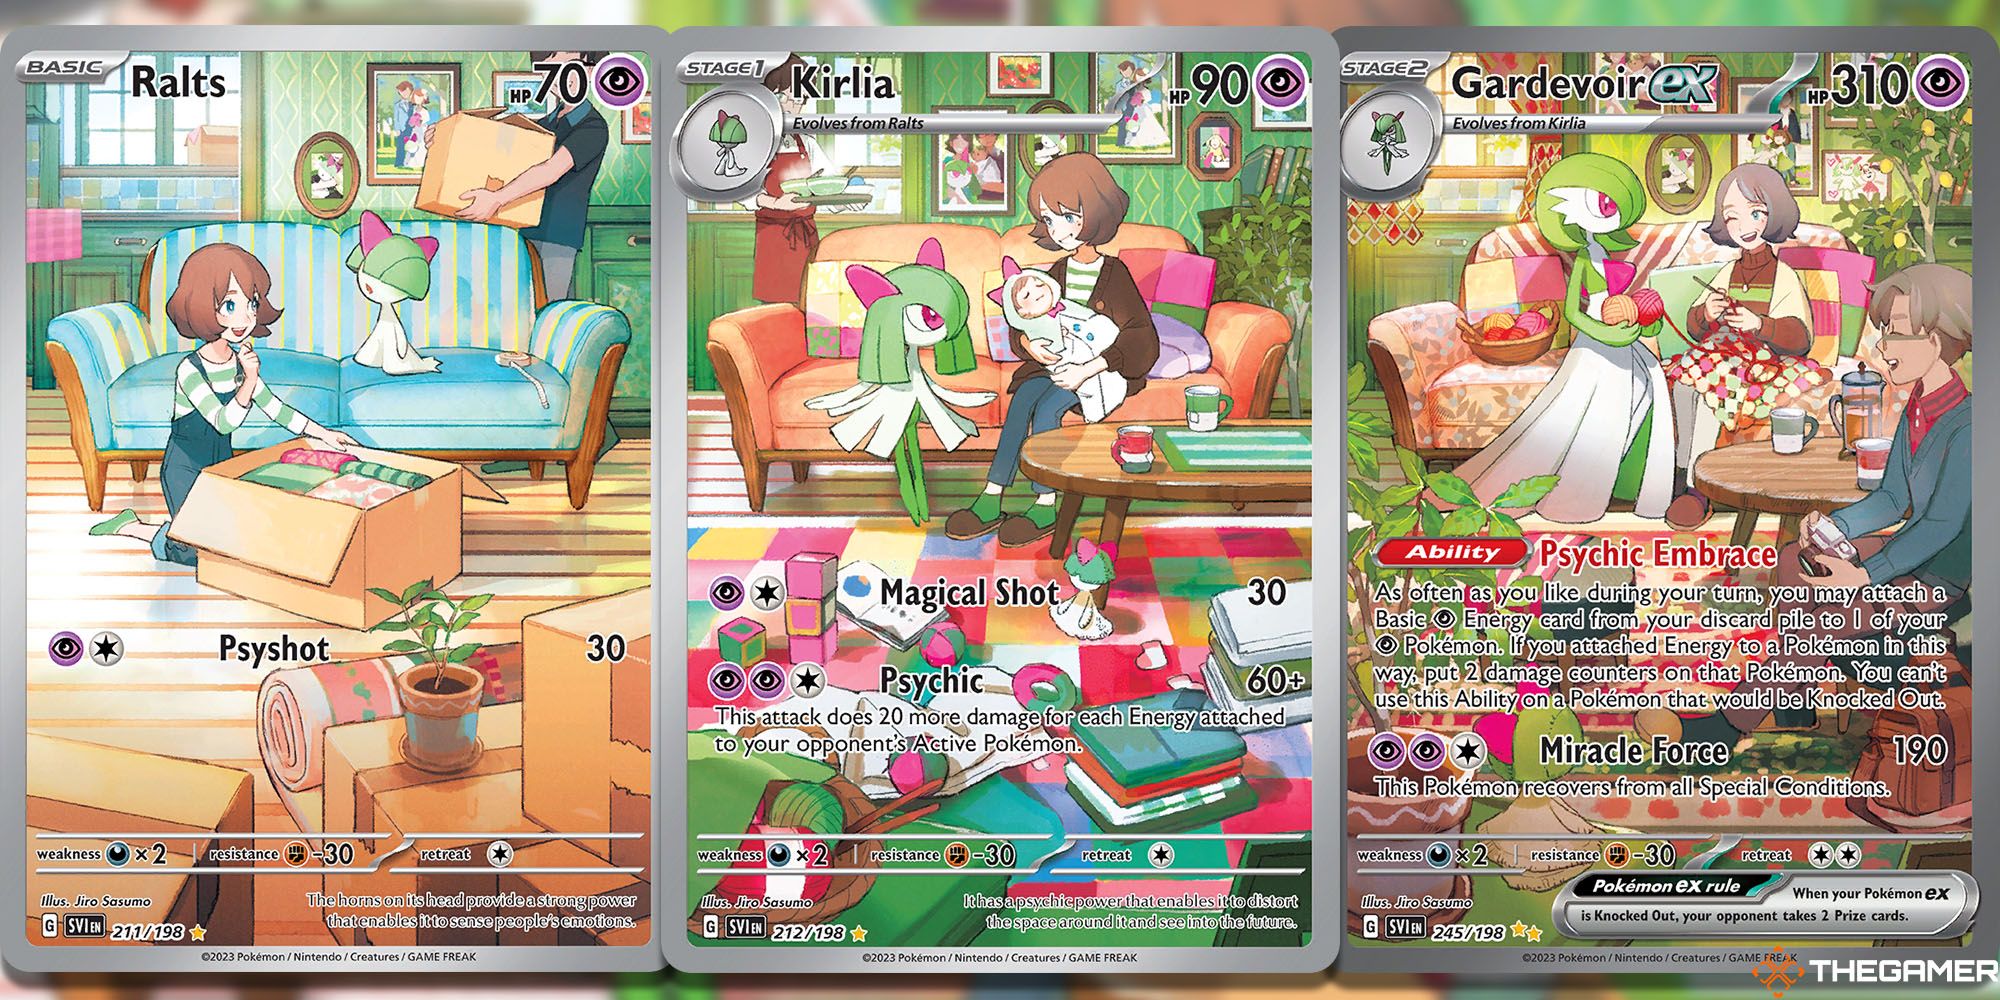 Ralts (Scarlet & Violet #211), Kirlia (Scarlet & Violet #212), and Gardevoir ex (Scarlet & Violet #245) Pokemon TCG cards